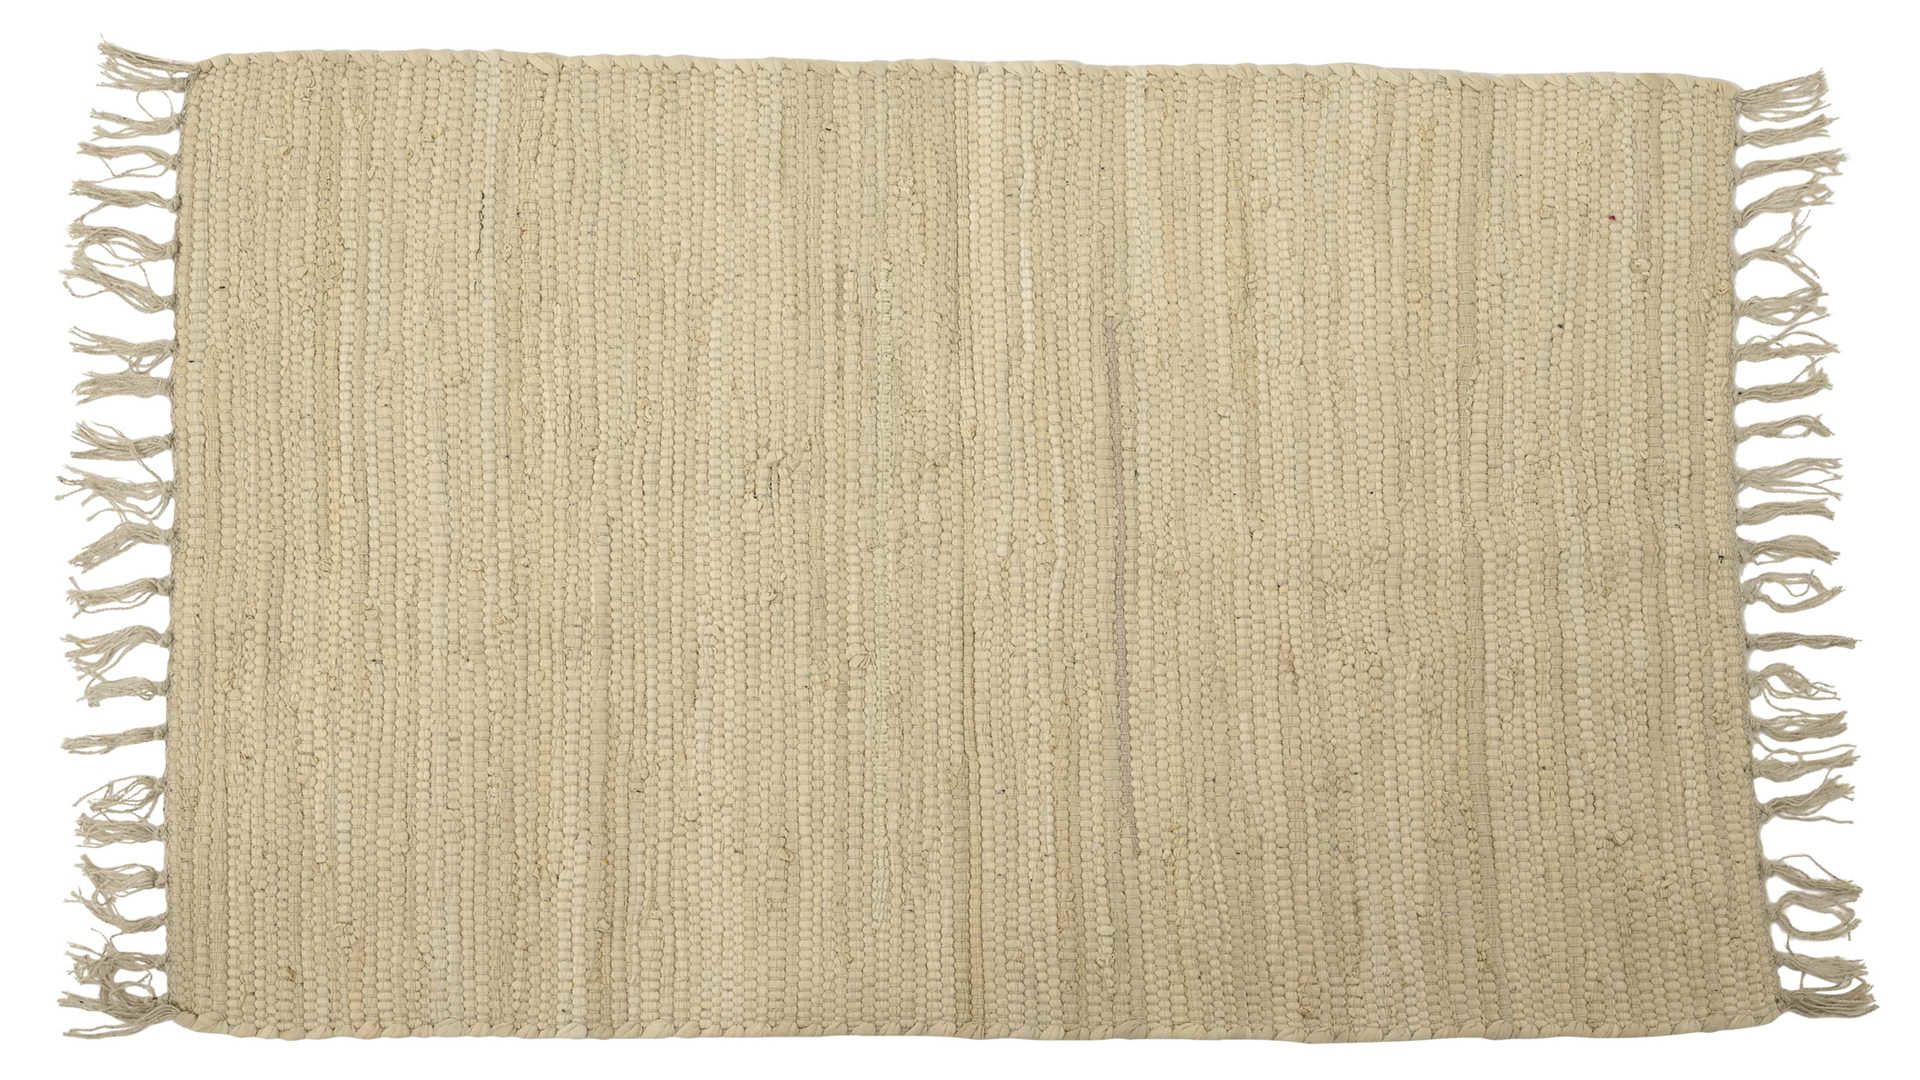 Naturteppich Kaemingk aus Naturfaser in Beige Fransen-Teppich beige Baumwolle - ca. 91 x 60 cm